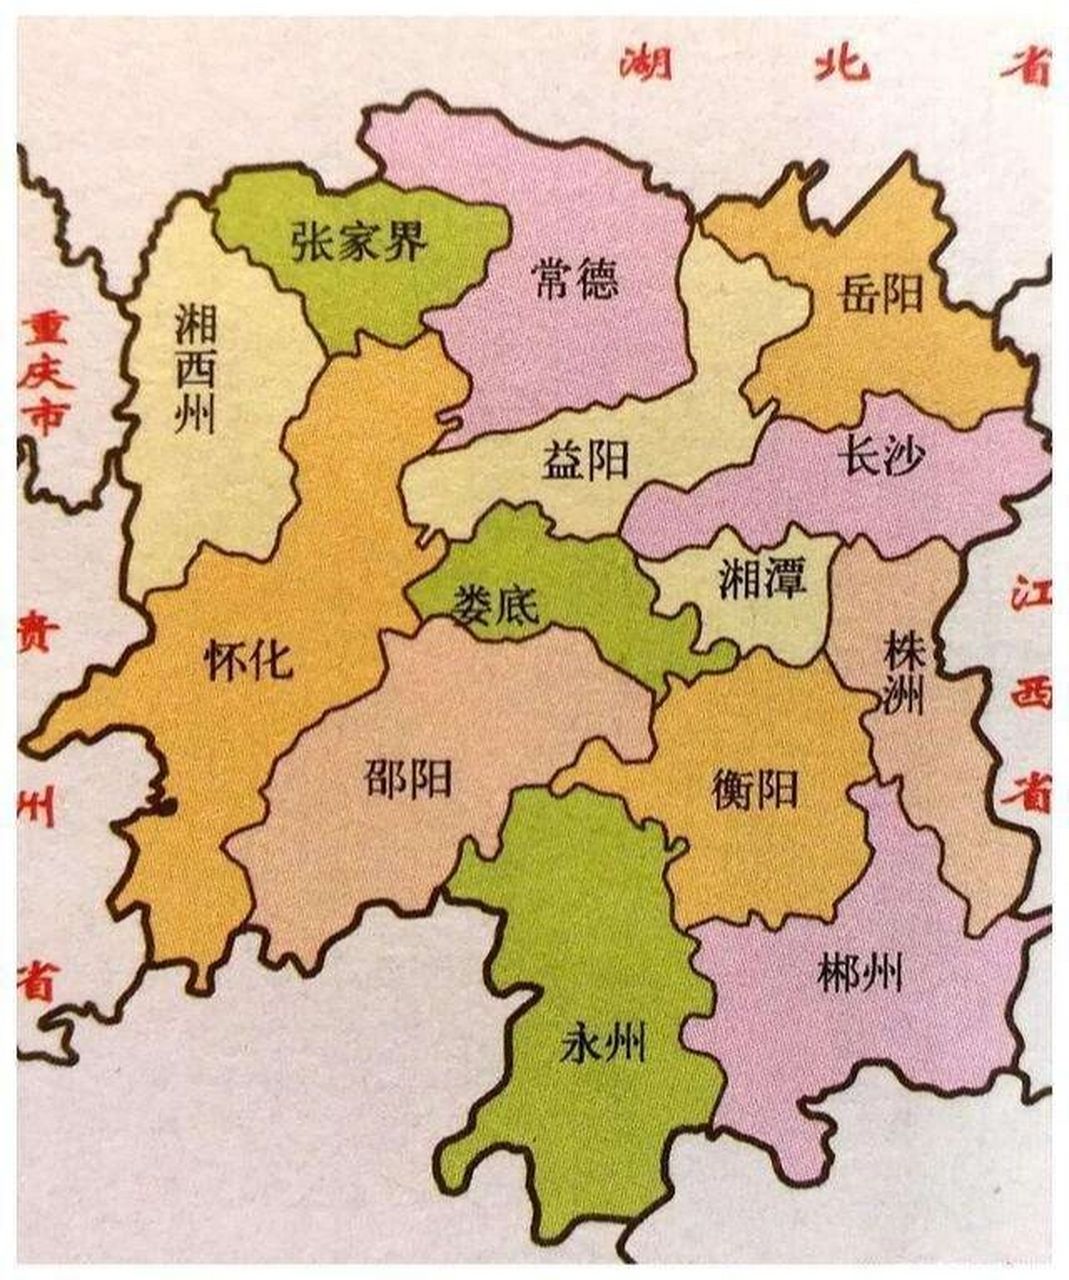 湖南省地图各市县名称图片